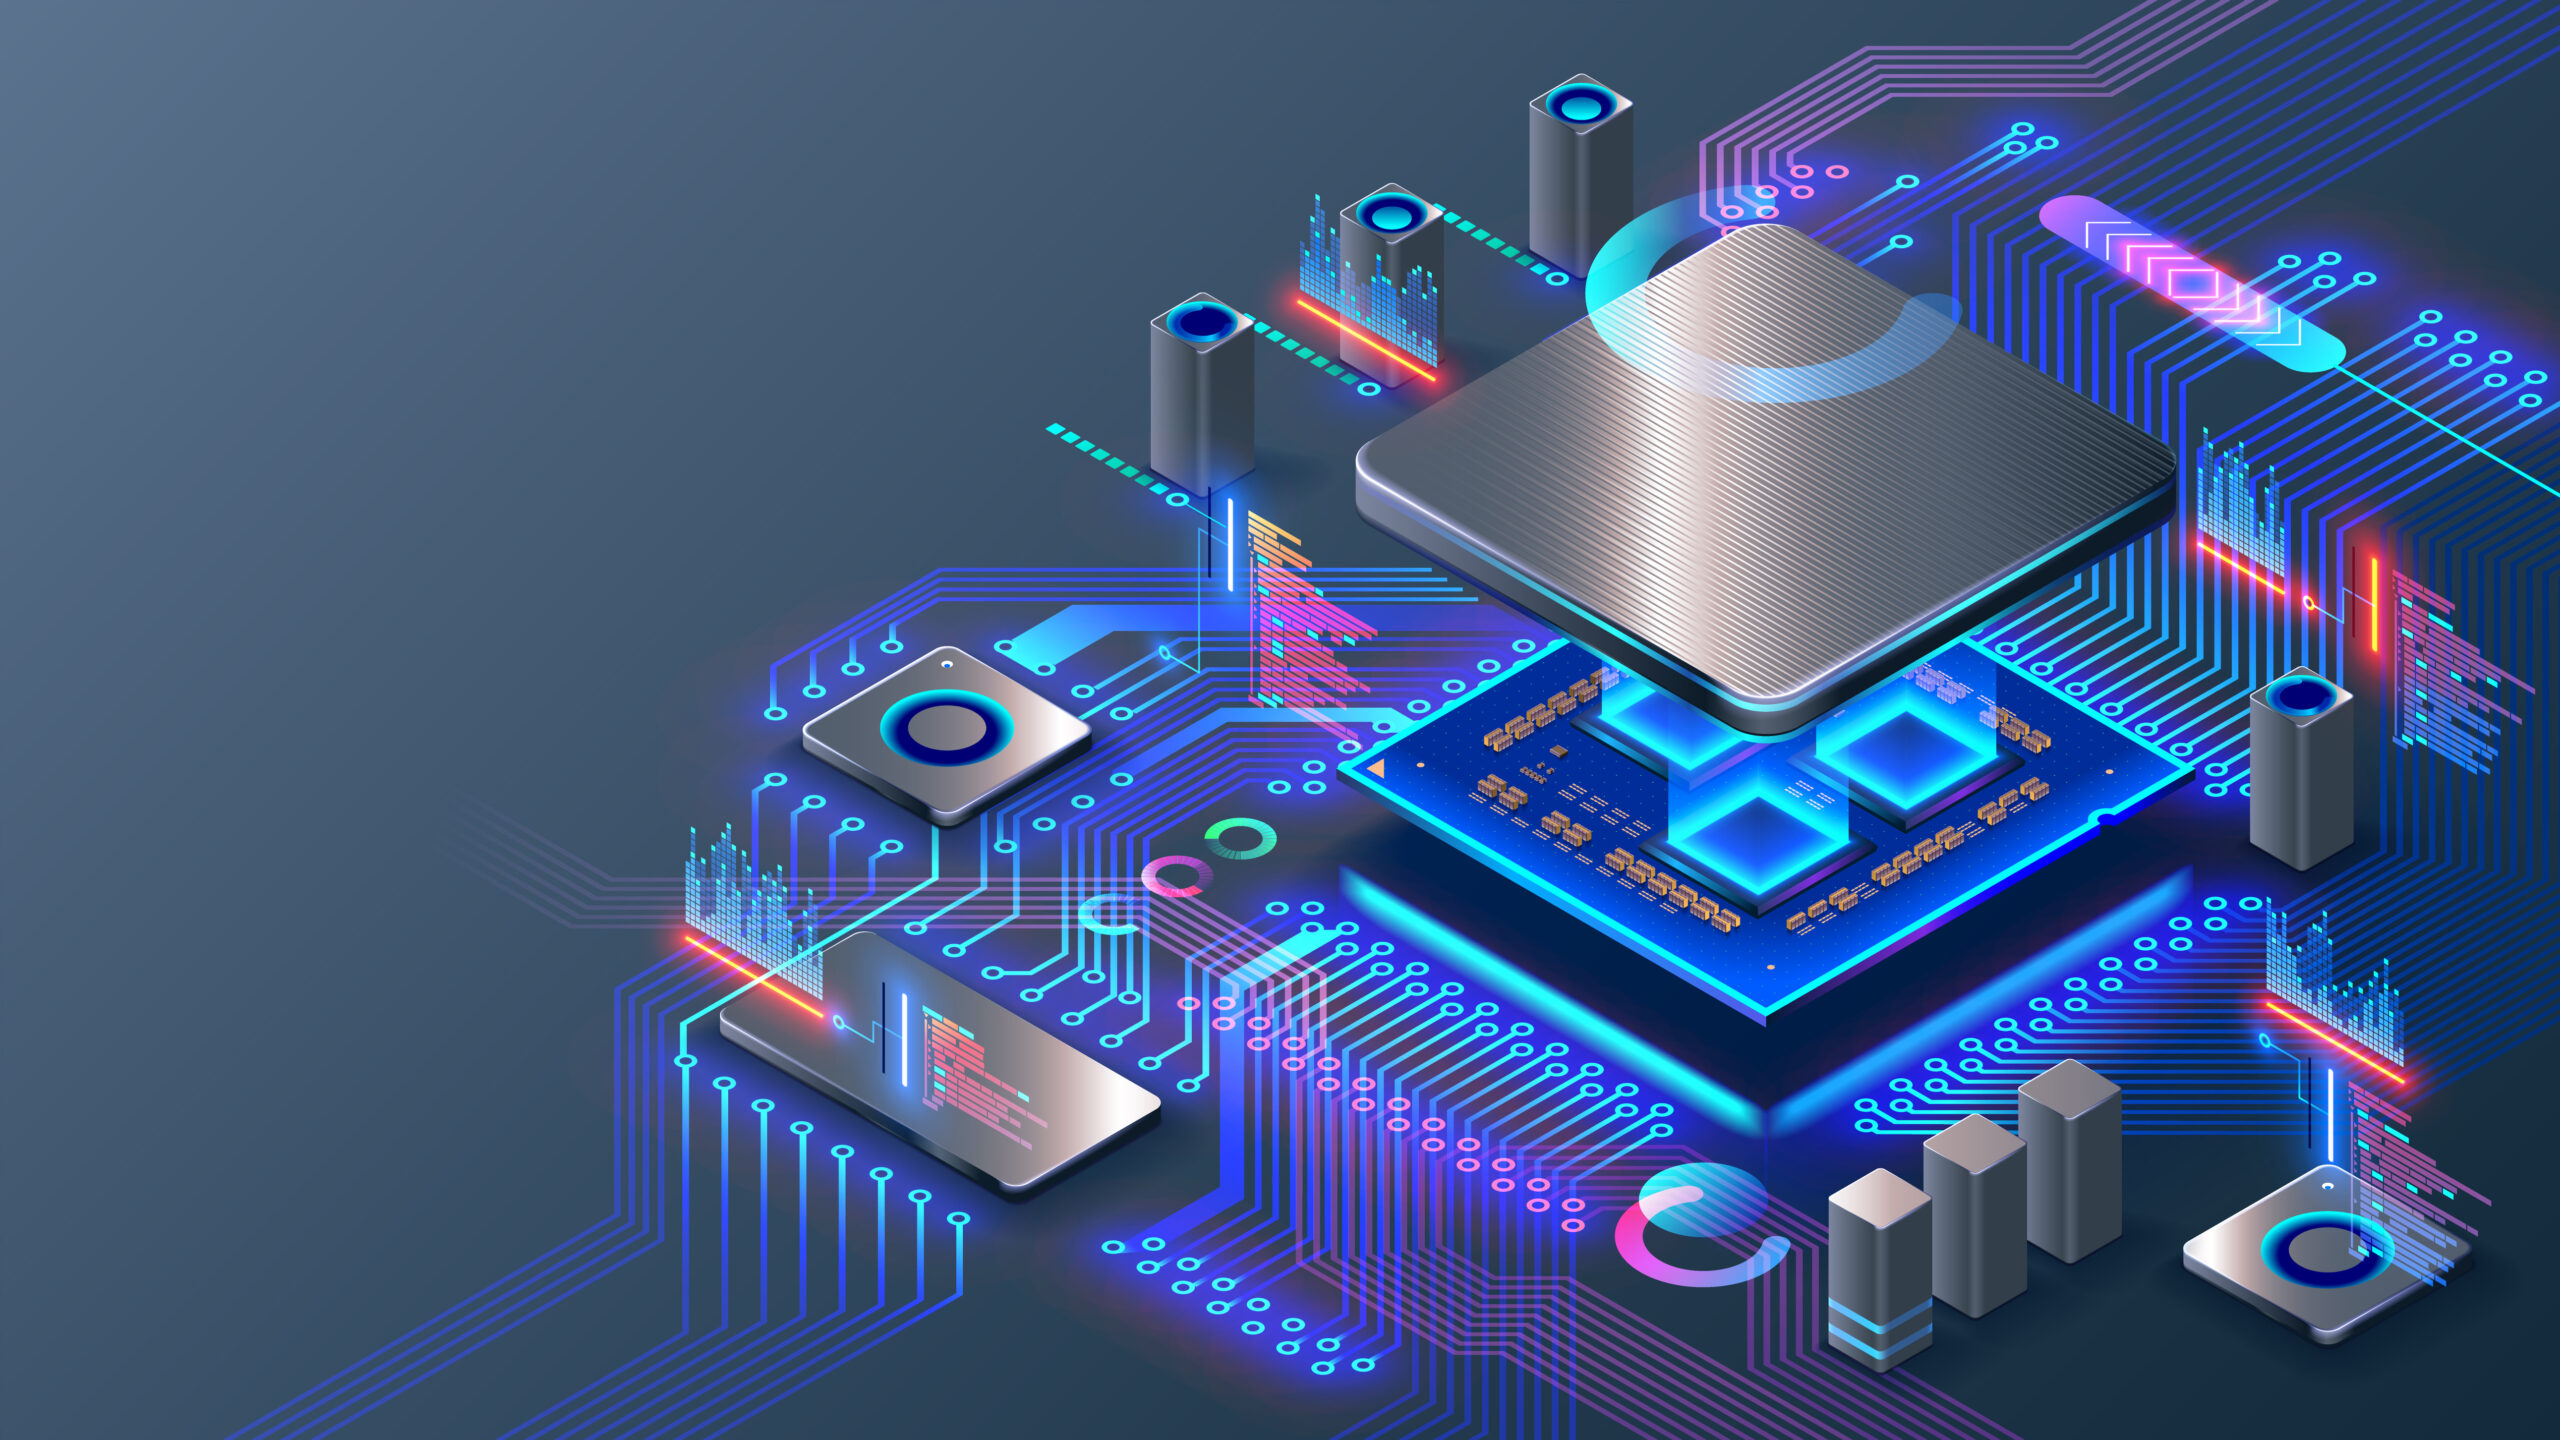 Grootschalige integratie van 2D-materialen als halfgeleidend kanaal in een in-memory processor (EPFL)